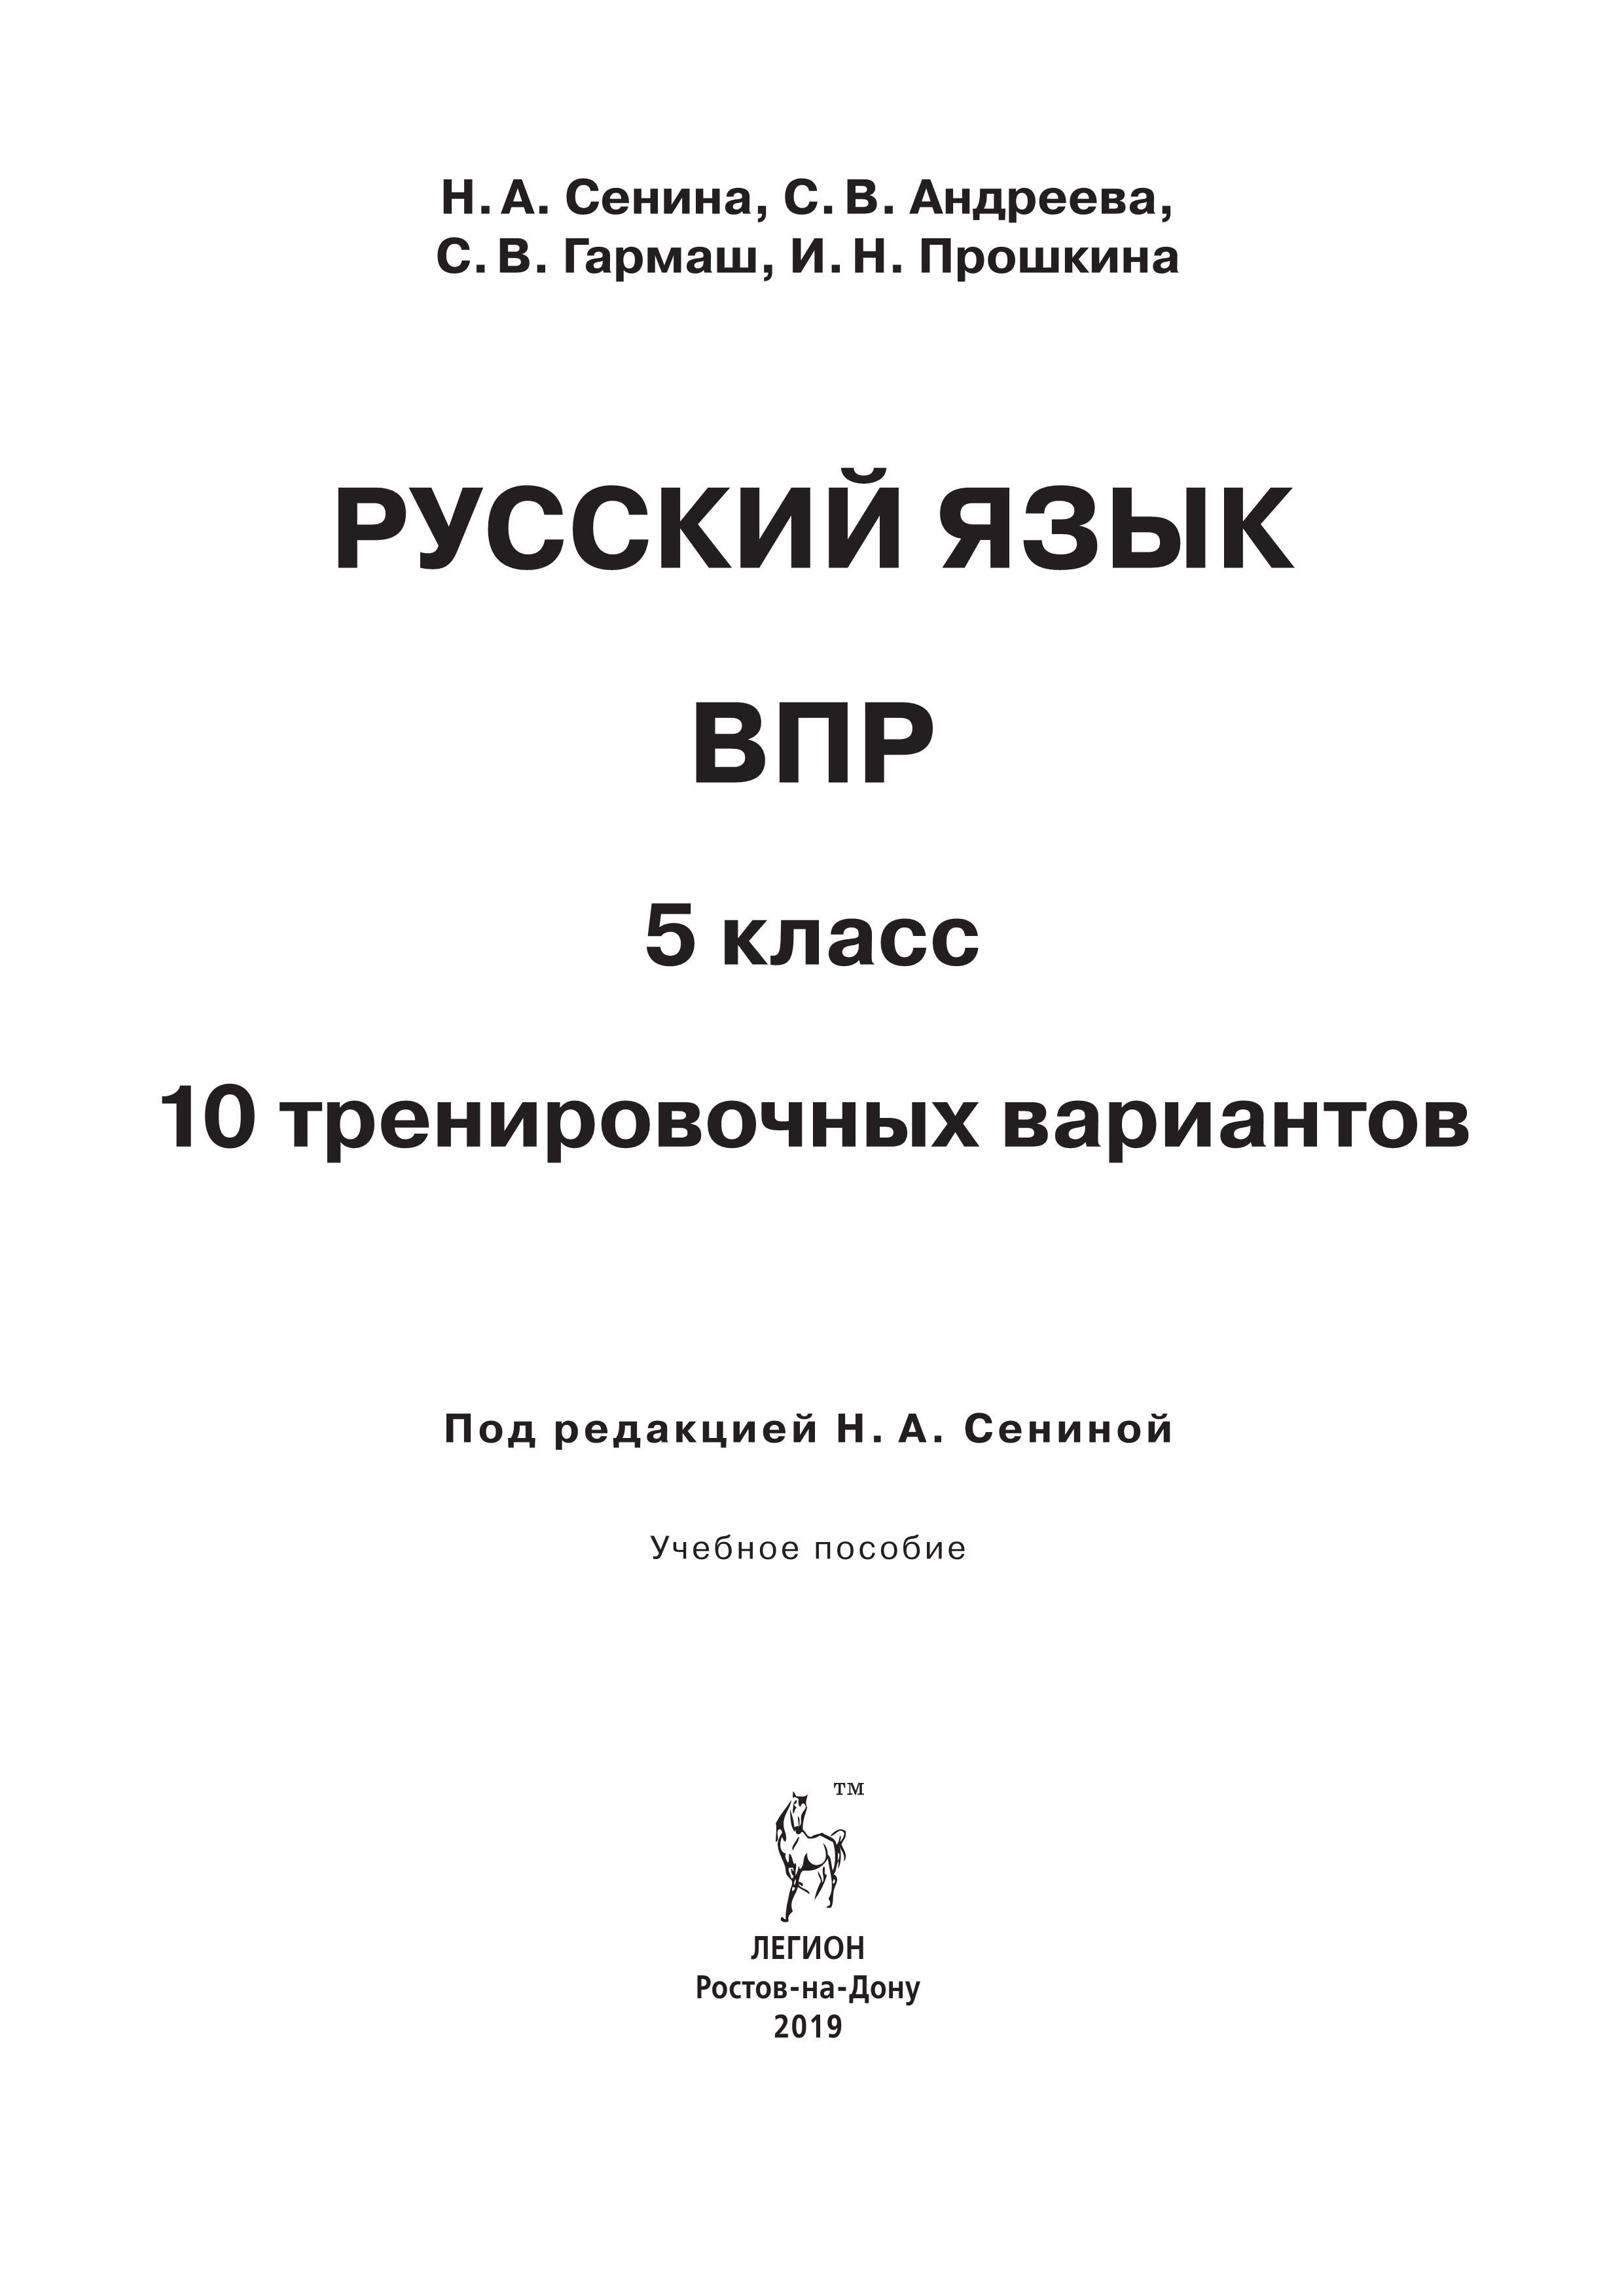 Русский язык. 5 класс. ВПР. 10 тренировочных вариантов. А4